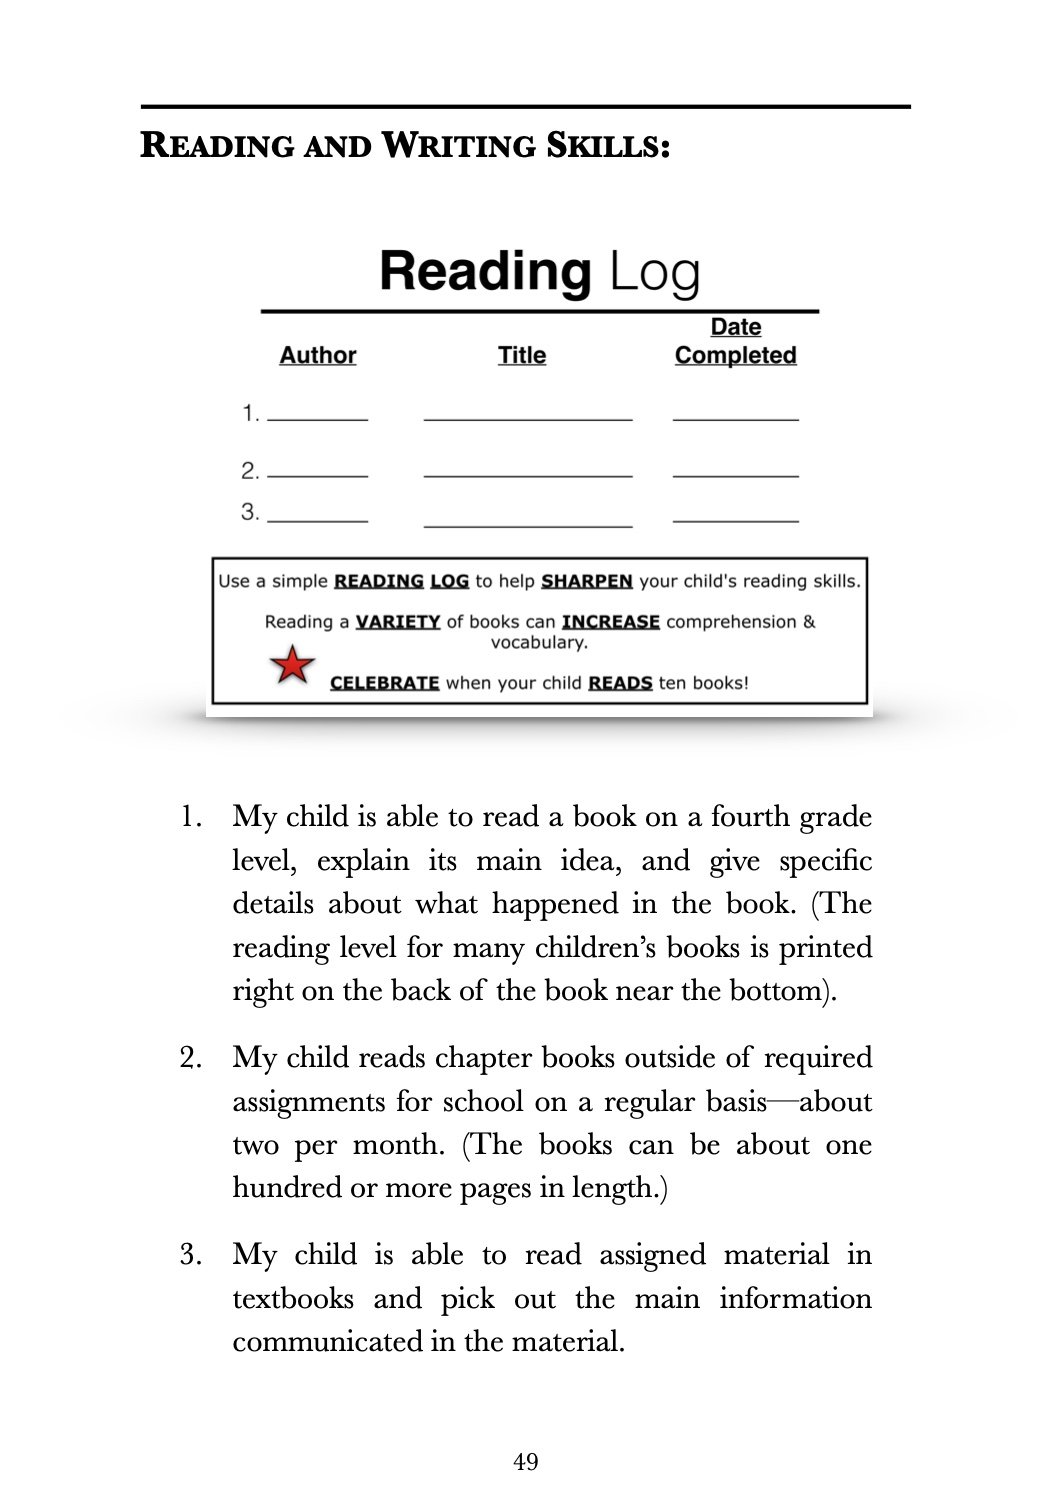 4th grade reading log.jpg